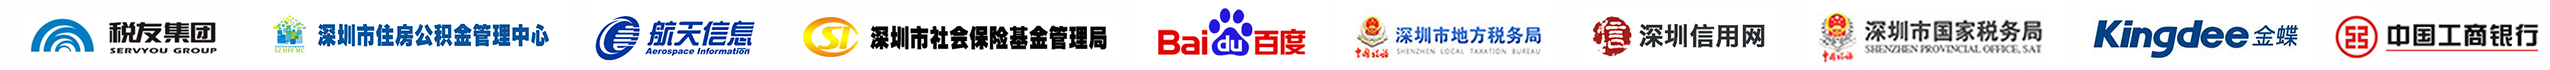 深圳市國家稅務局、中國工商銀行、百度、深圳稅局